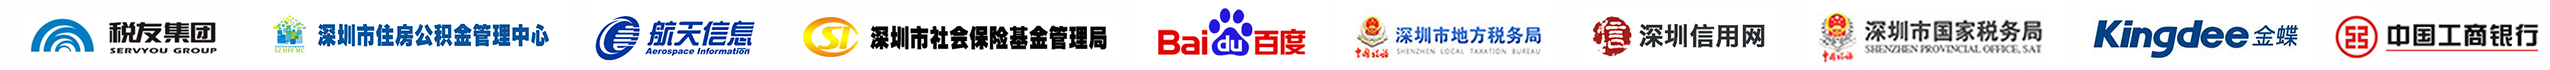 深圳市國家稅務局、中國工商銀行、百度、深圳稅局